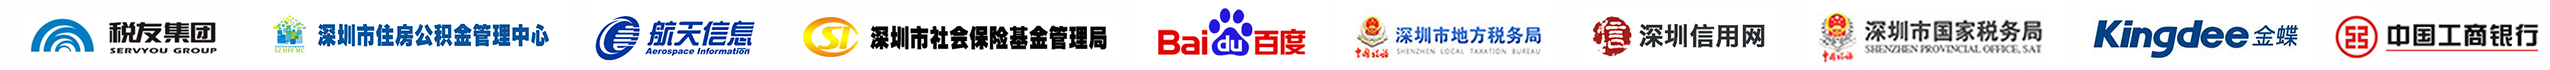 深圳市國家稅務局、中國工商銀行、百度、深圳稅局